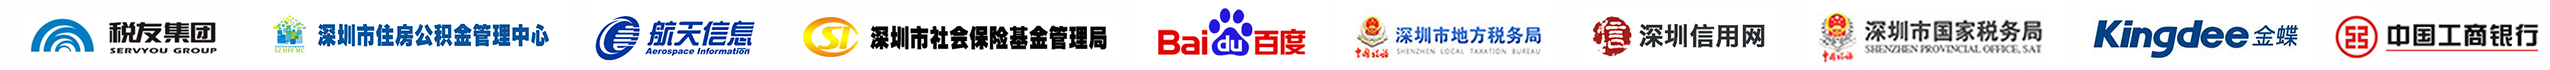 深圳市國家稅務局、中國工商銀行、百度、深圳稅局